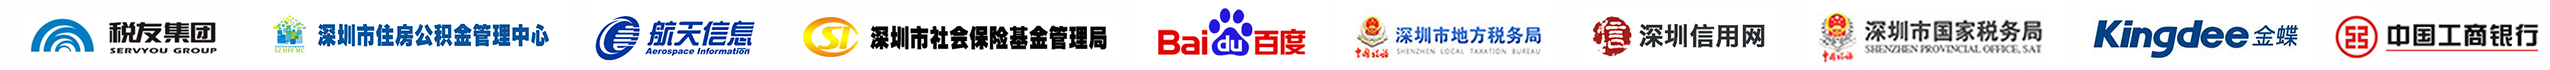 深圳市國家稅務局、中國工商銀行、百度、深圳稅局